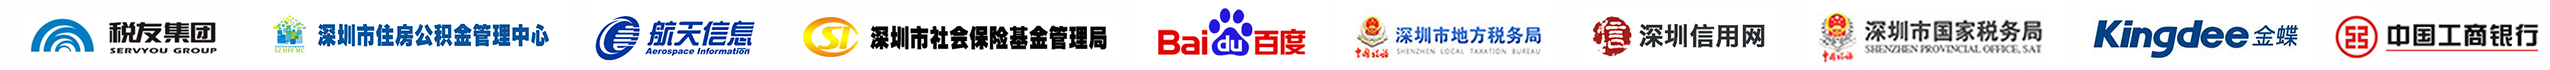 深圳市國家稅務局、中國工商銀行、百度、深圳稅局